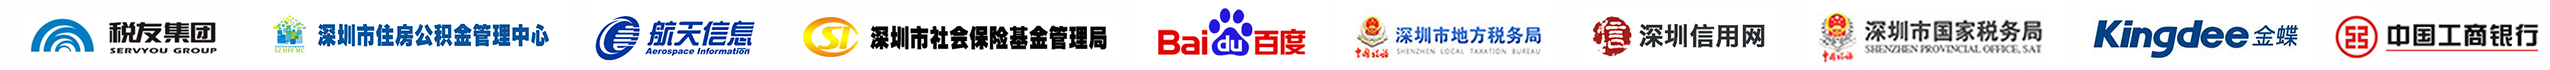 深圳市國家稅務局、中國工商銀行、百度、深圳稅局